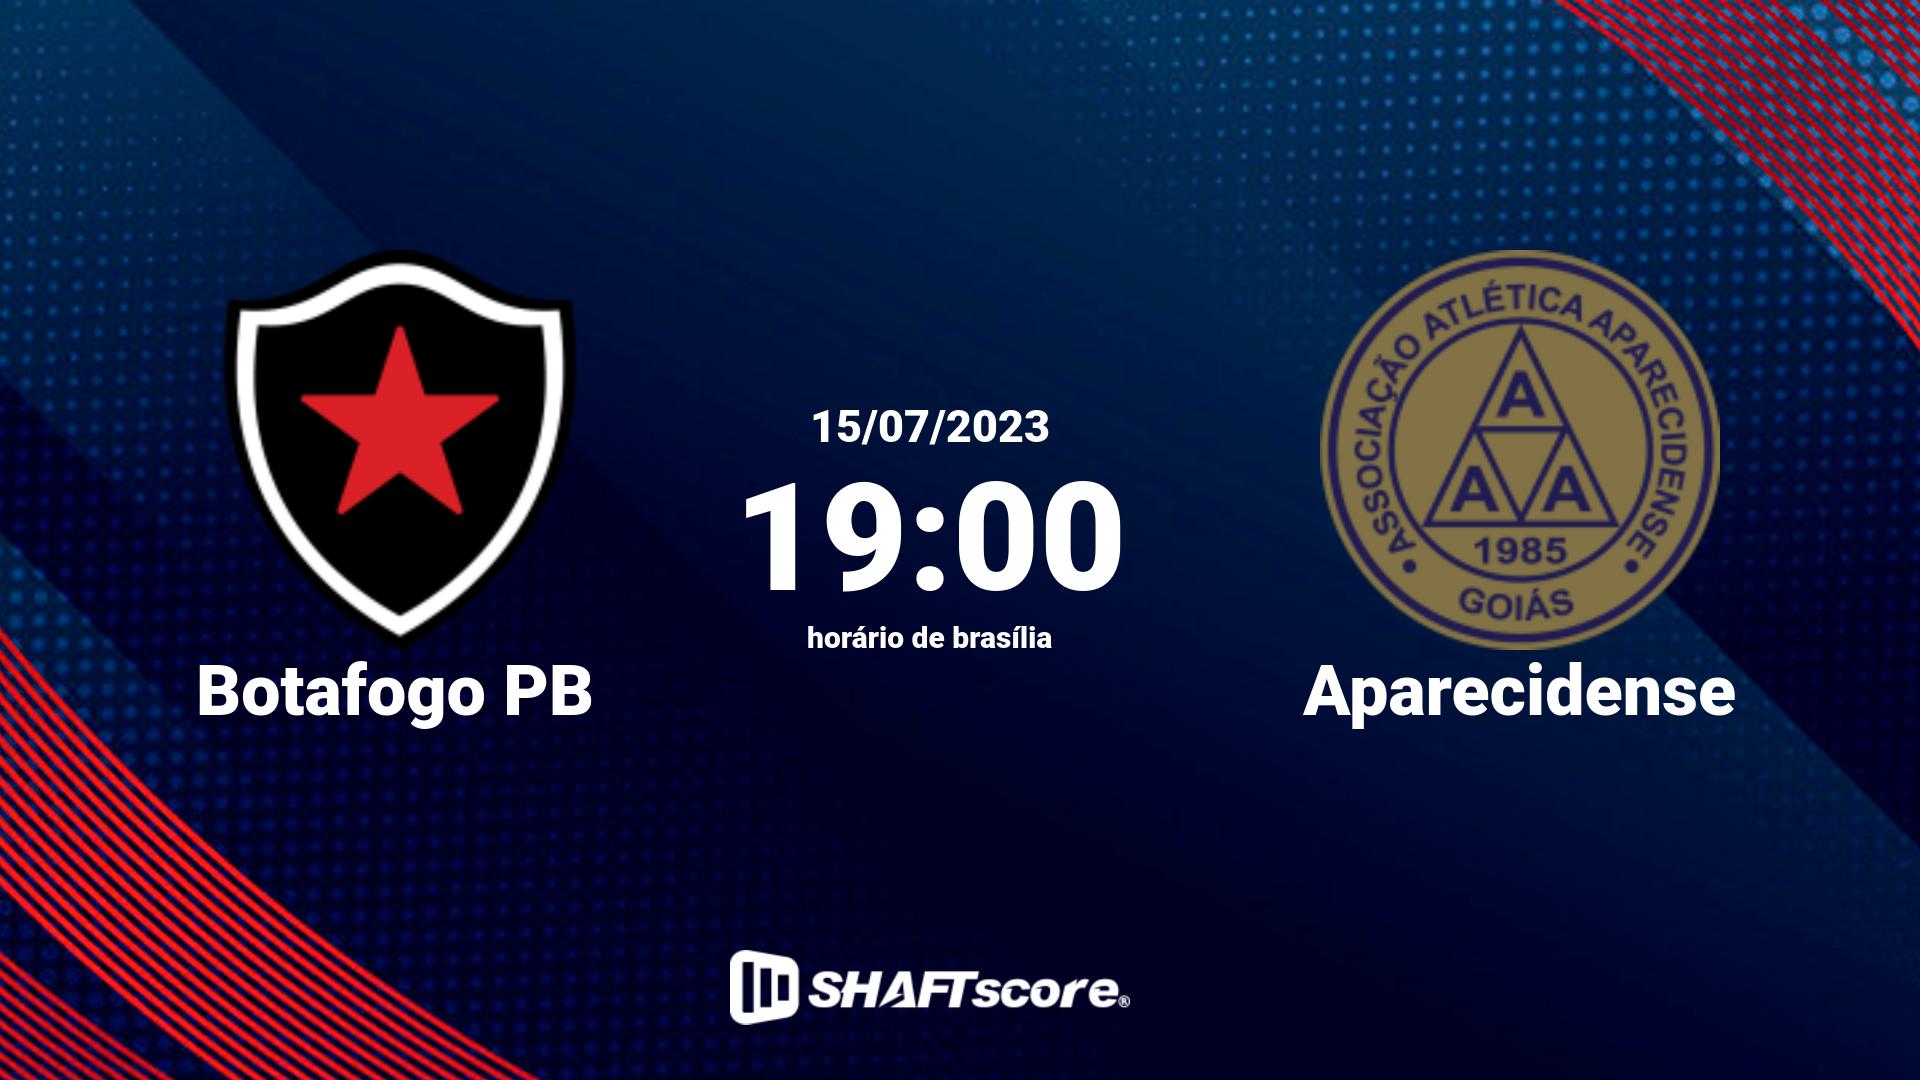 Estatísticas do jogo Botafogo PB vs Aparecidense 15.07 19:00